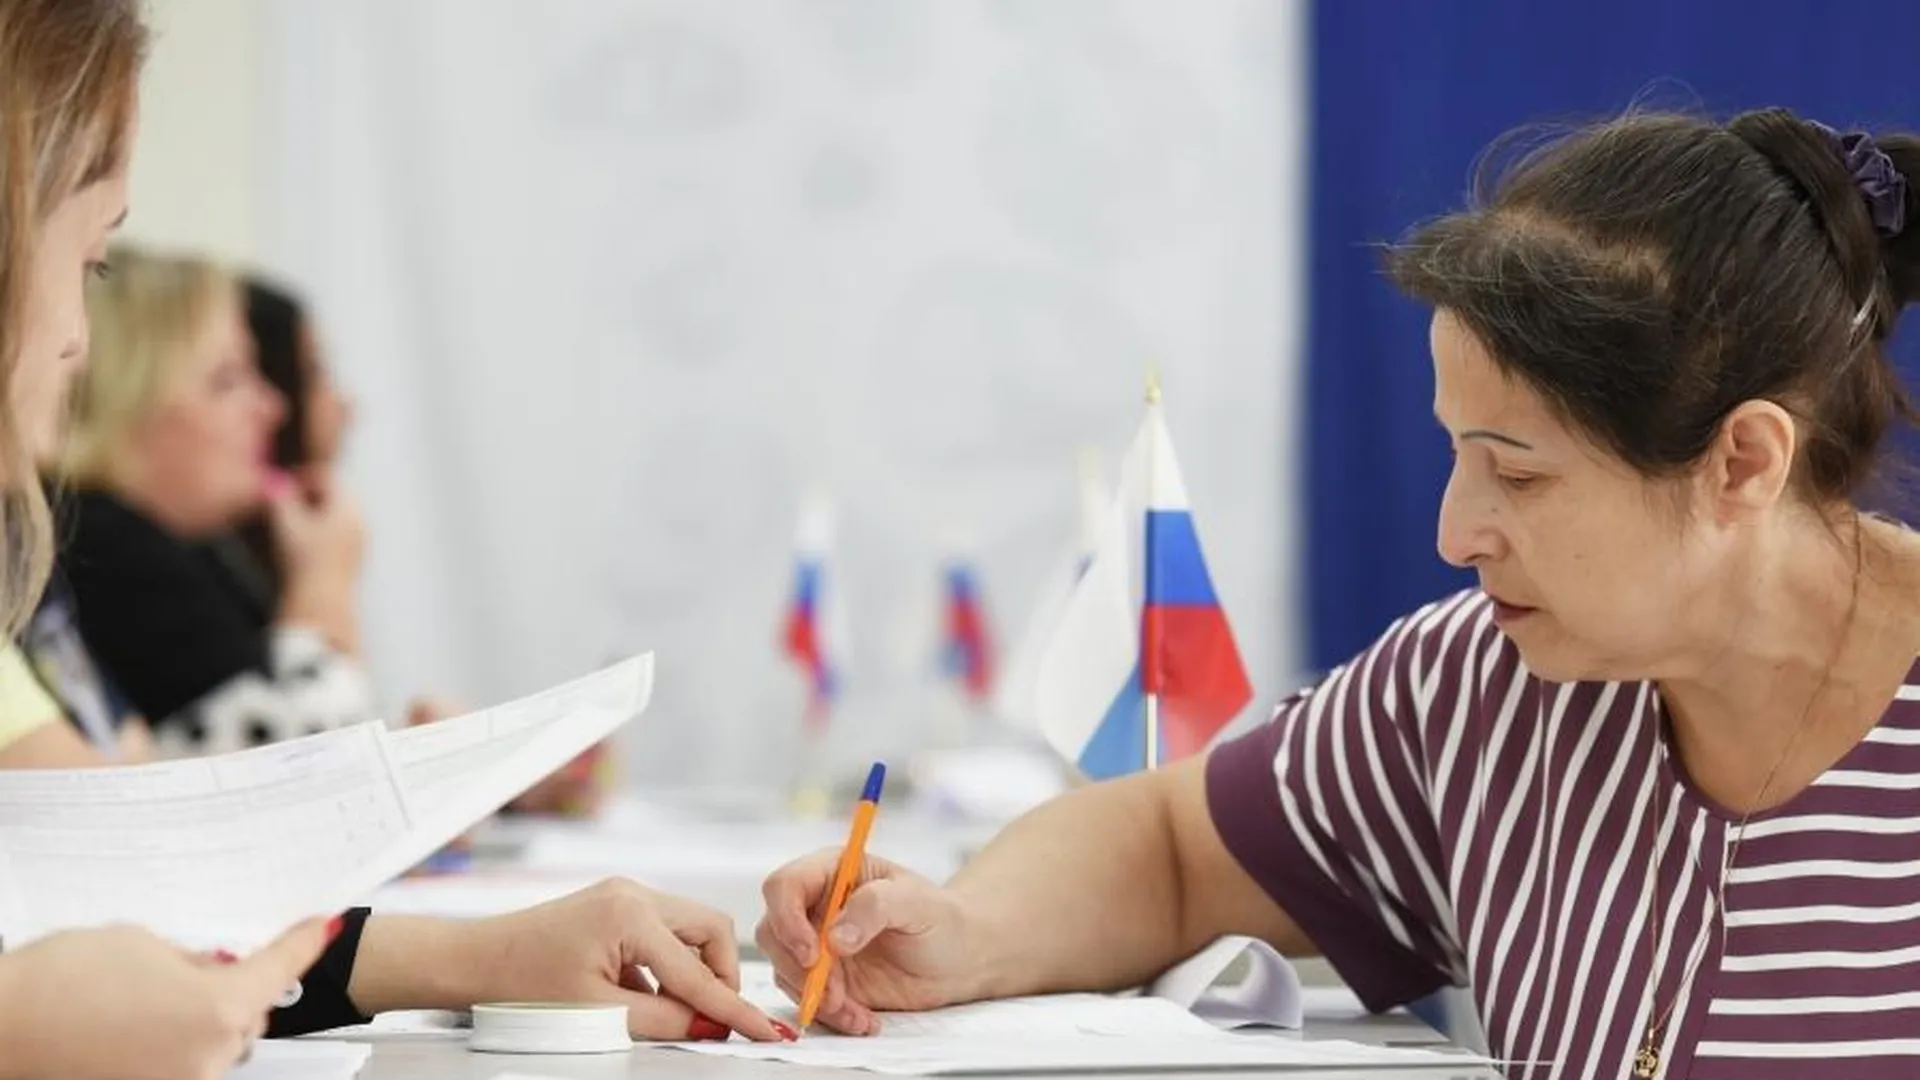 Обучающий семинар по предвыборной агитации провели в Подмосковье